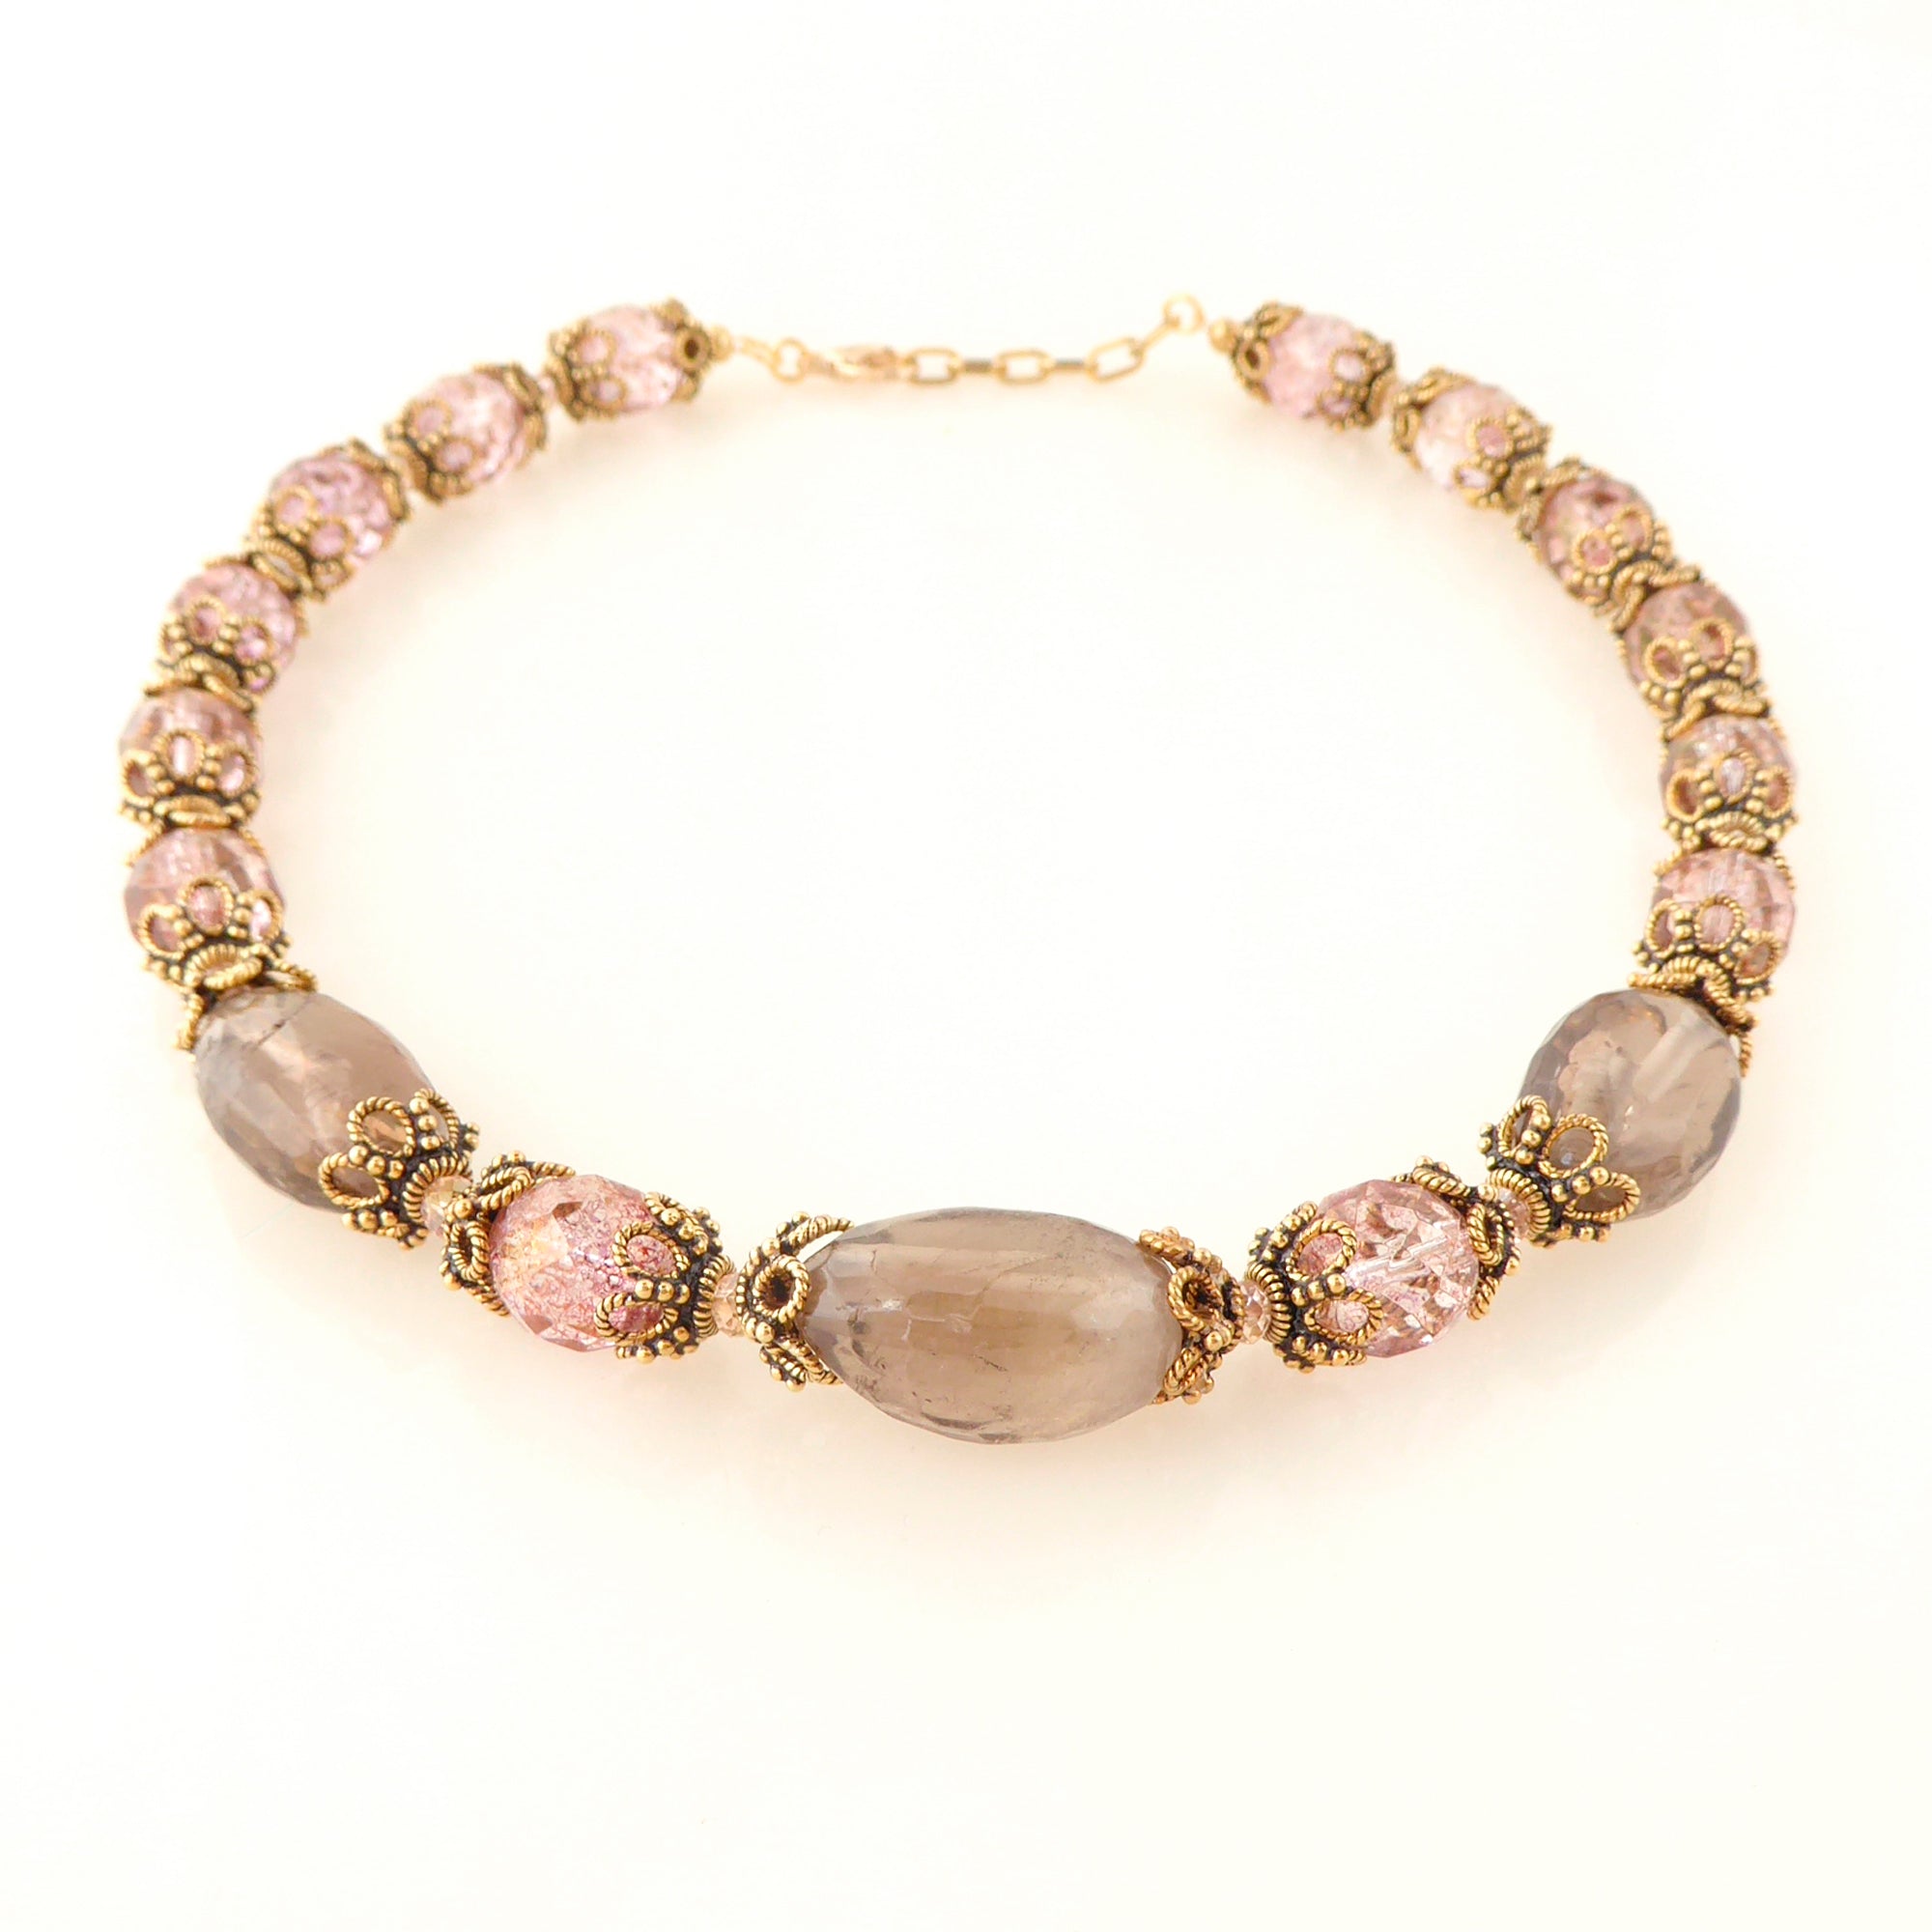 Greige quartz rococo necklace by Jenny Dayco 3